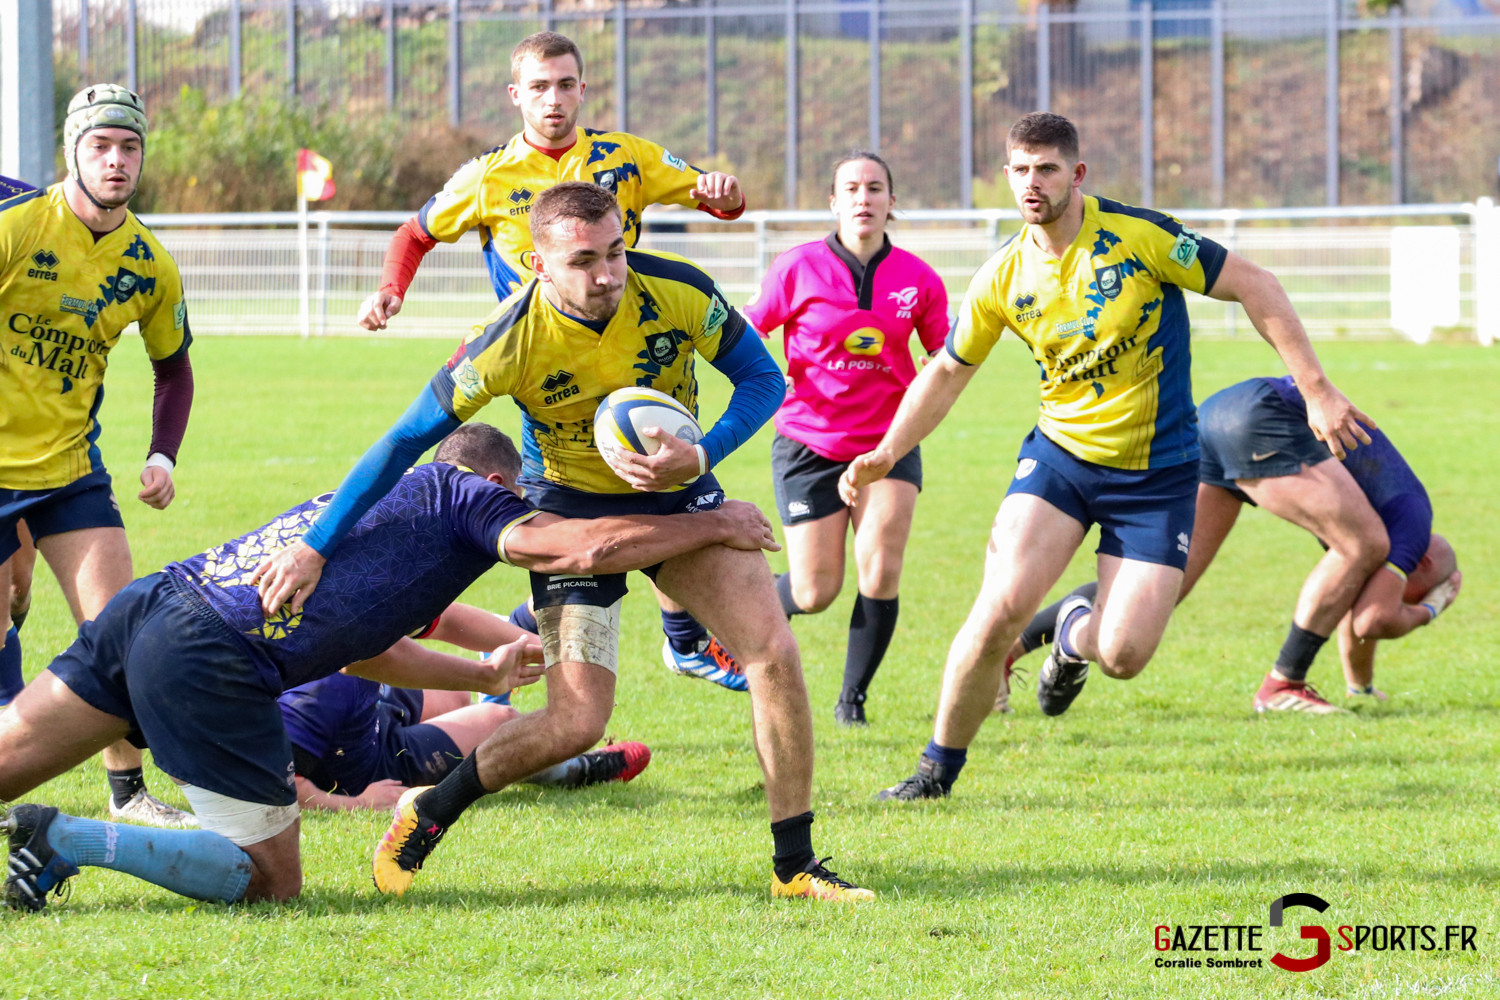 Rugby Rca Vs Maison Laffitte Gazettesports Coralie Sombret 52